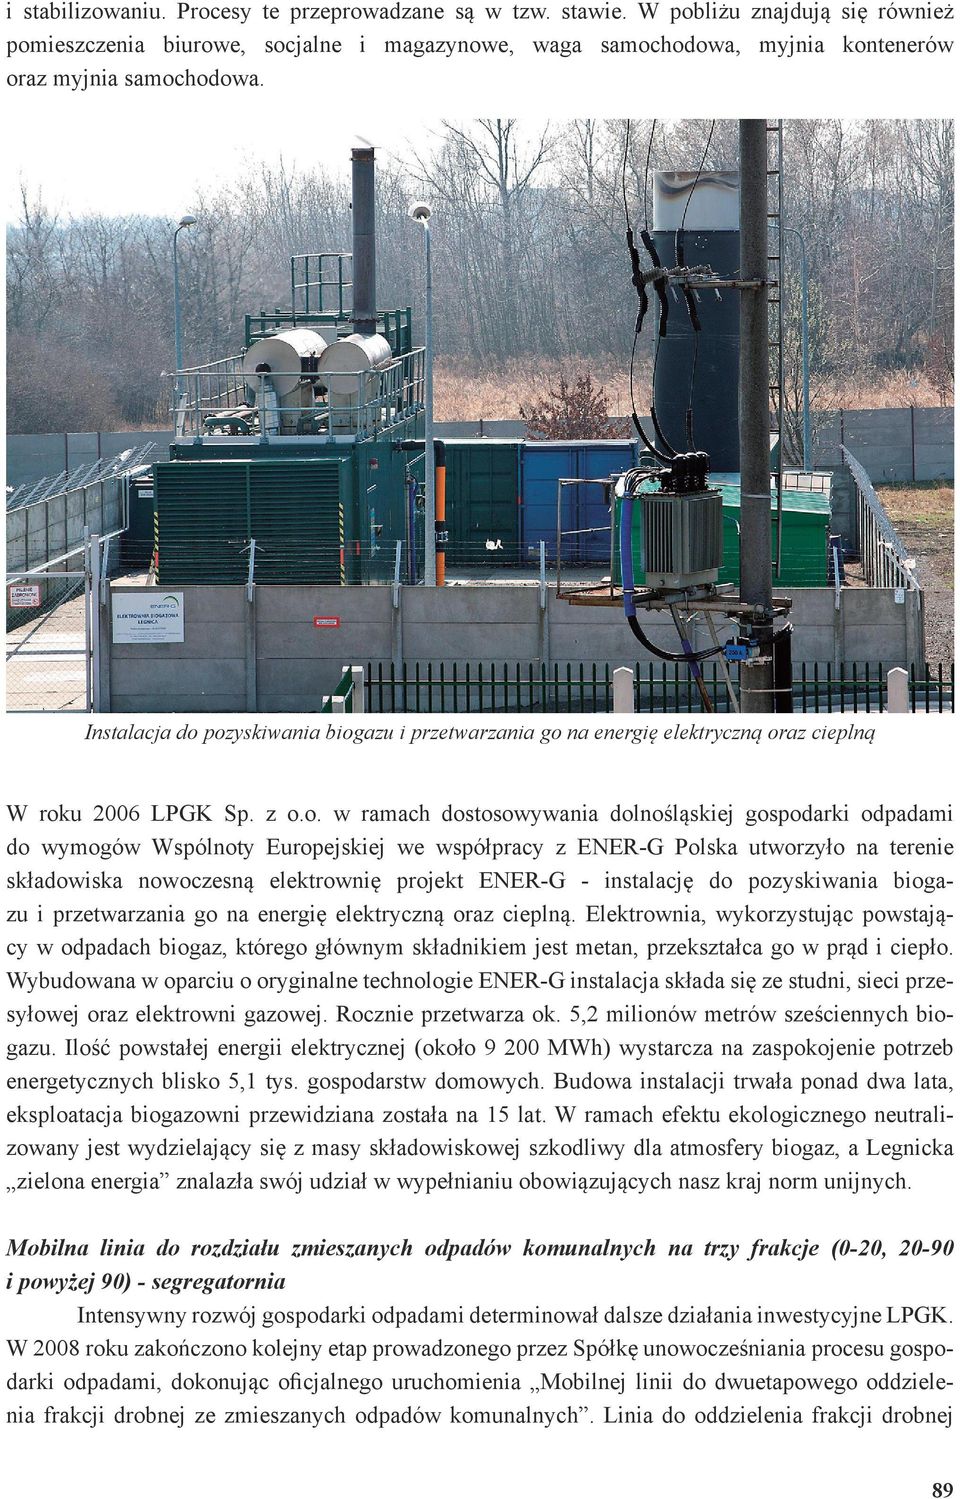 pozyskiwania biogazu i przetwarzania go na energię elektryczną oraz cieplną W roku 2006 LPGK Sp. z o.o. w ramach dostosowywania dolnośląskiej gospodarki odpadami do wymogów Wspólnoty Europejskiej we